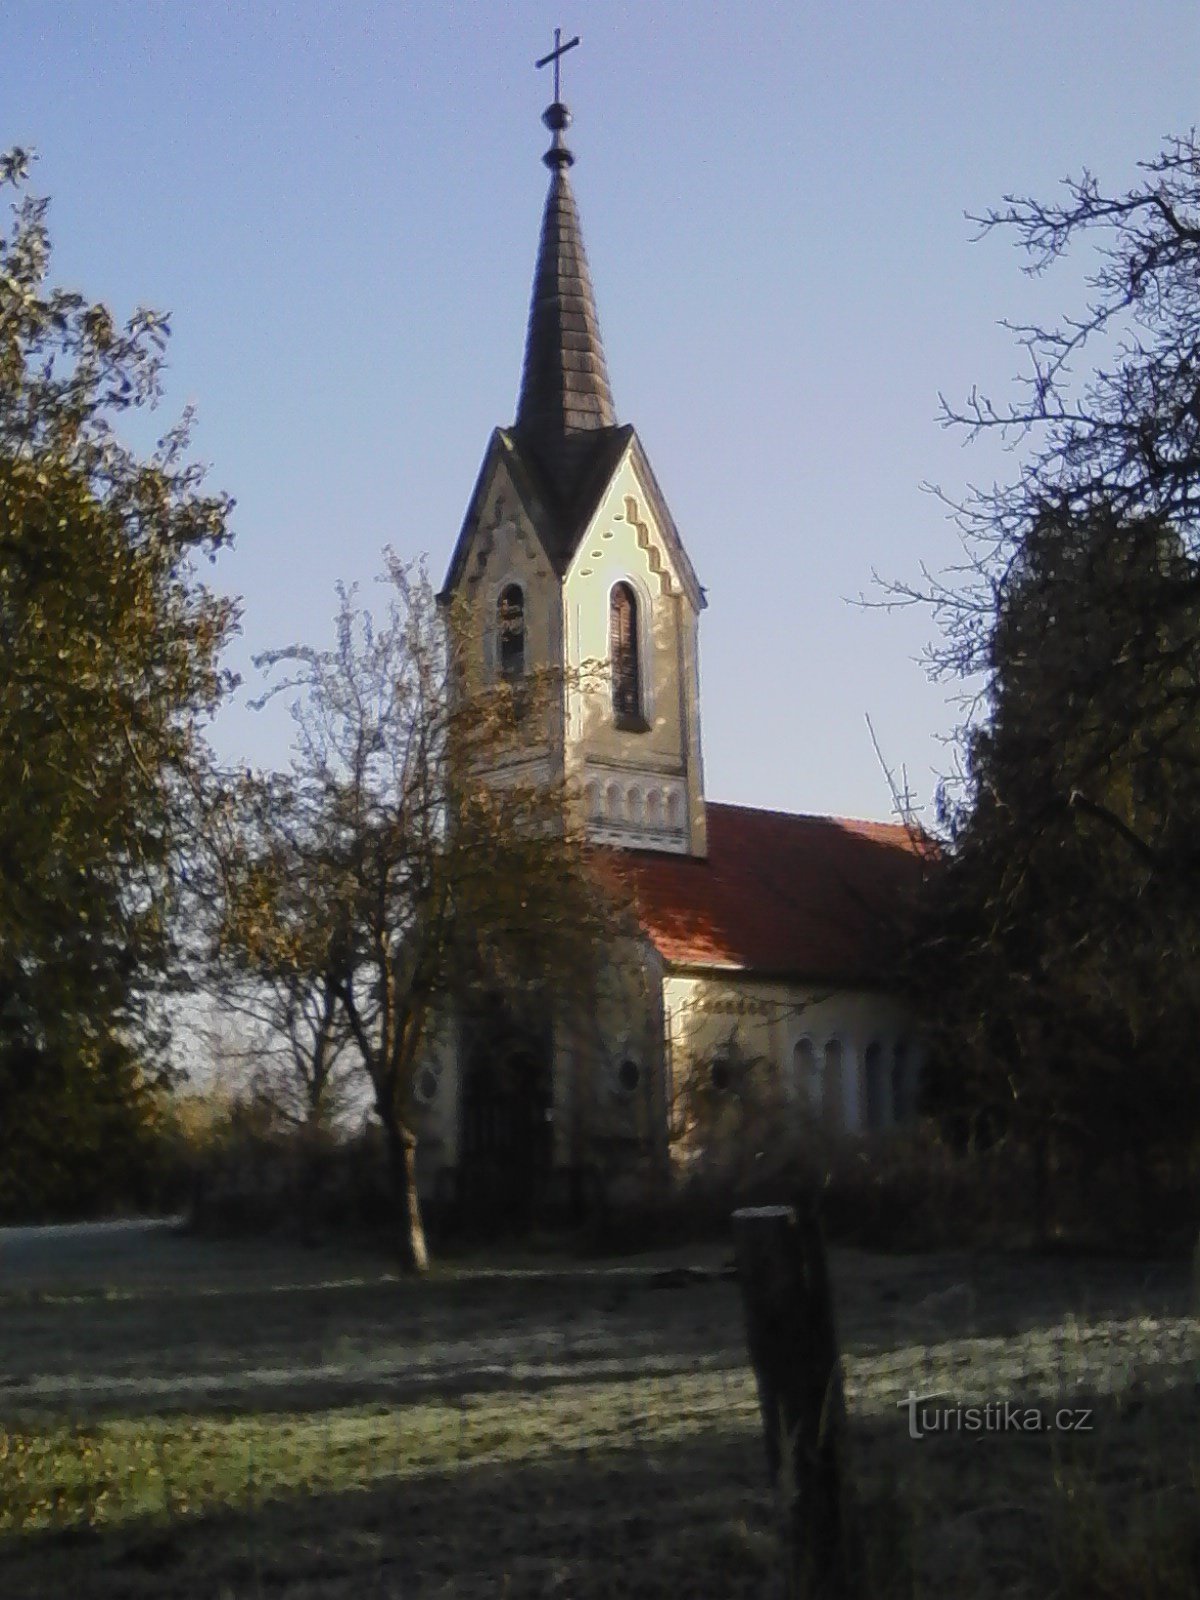 2. Nhà nguyện Sedmibolestná P. Maria gần Jetřichovice từ năm 1859.